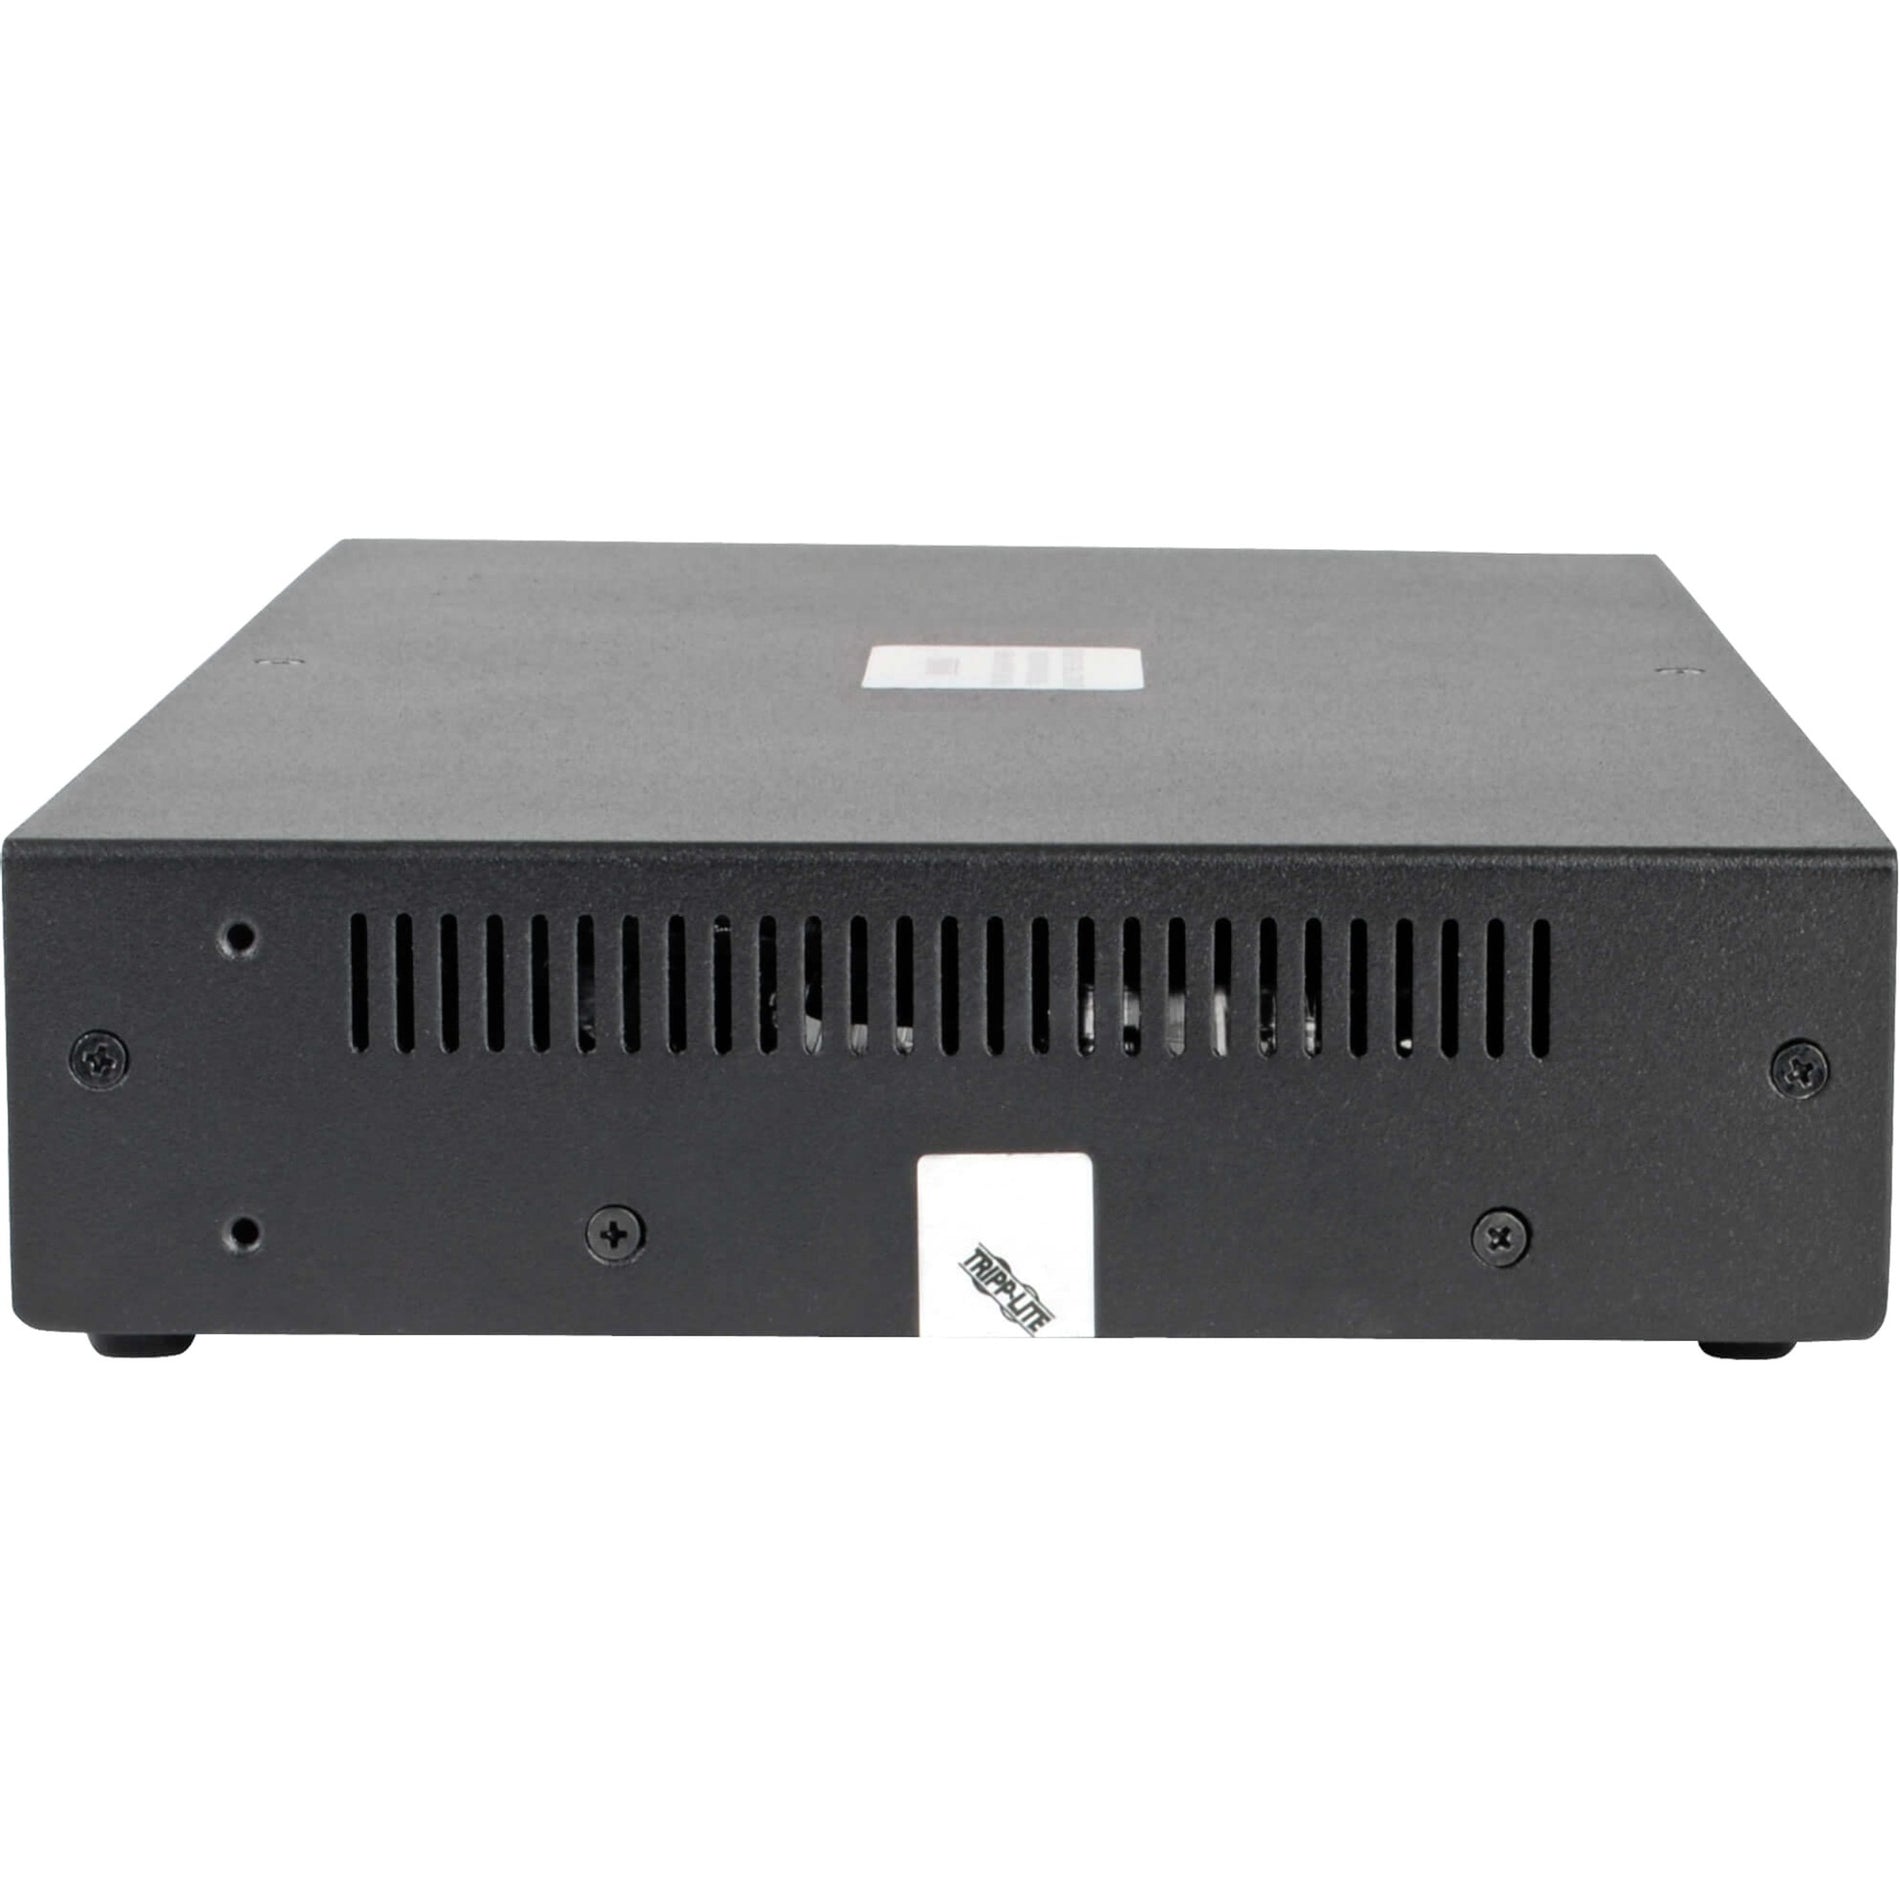 Tripp Lite B002-DV1A4 4-端 NIAP PP3.0-认证 DVI-I KVM 开关 最大视频分辨率 2560 x 1600 3 年保修  Tripp Lite 特力品